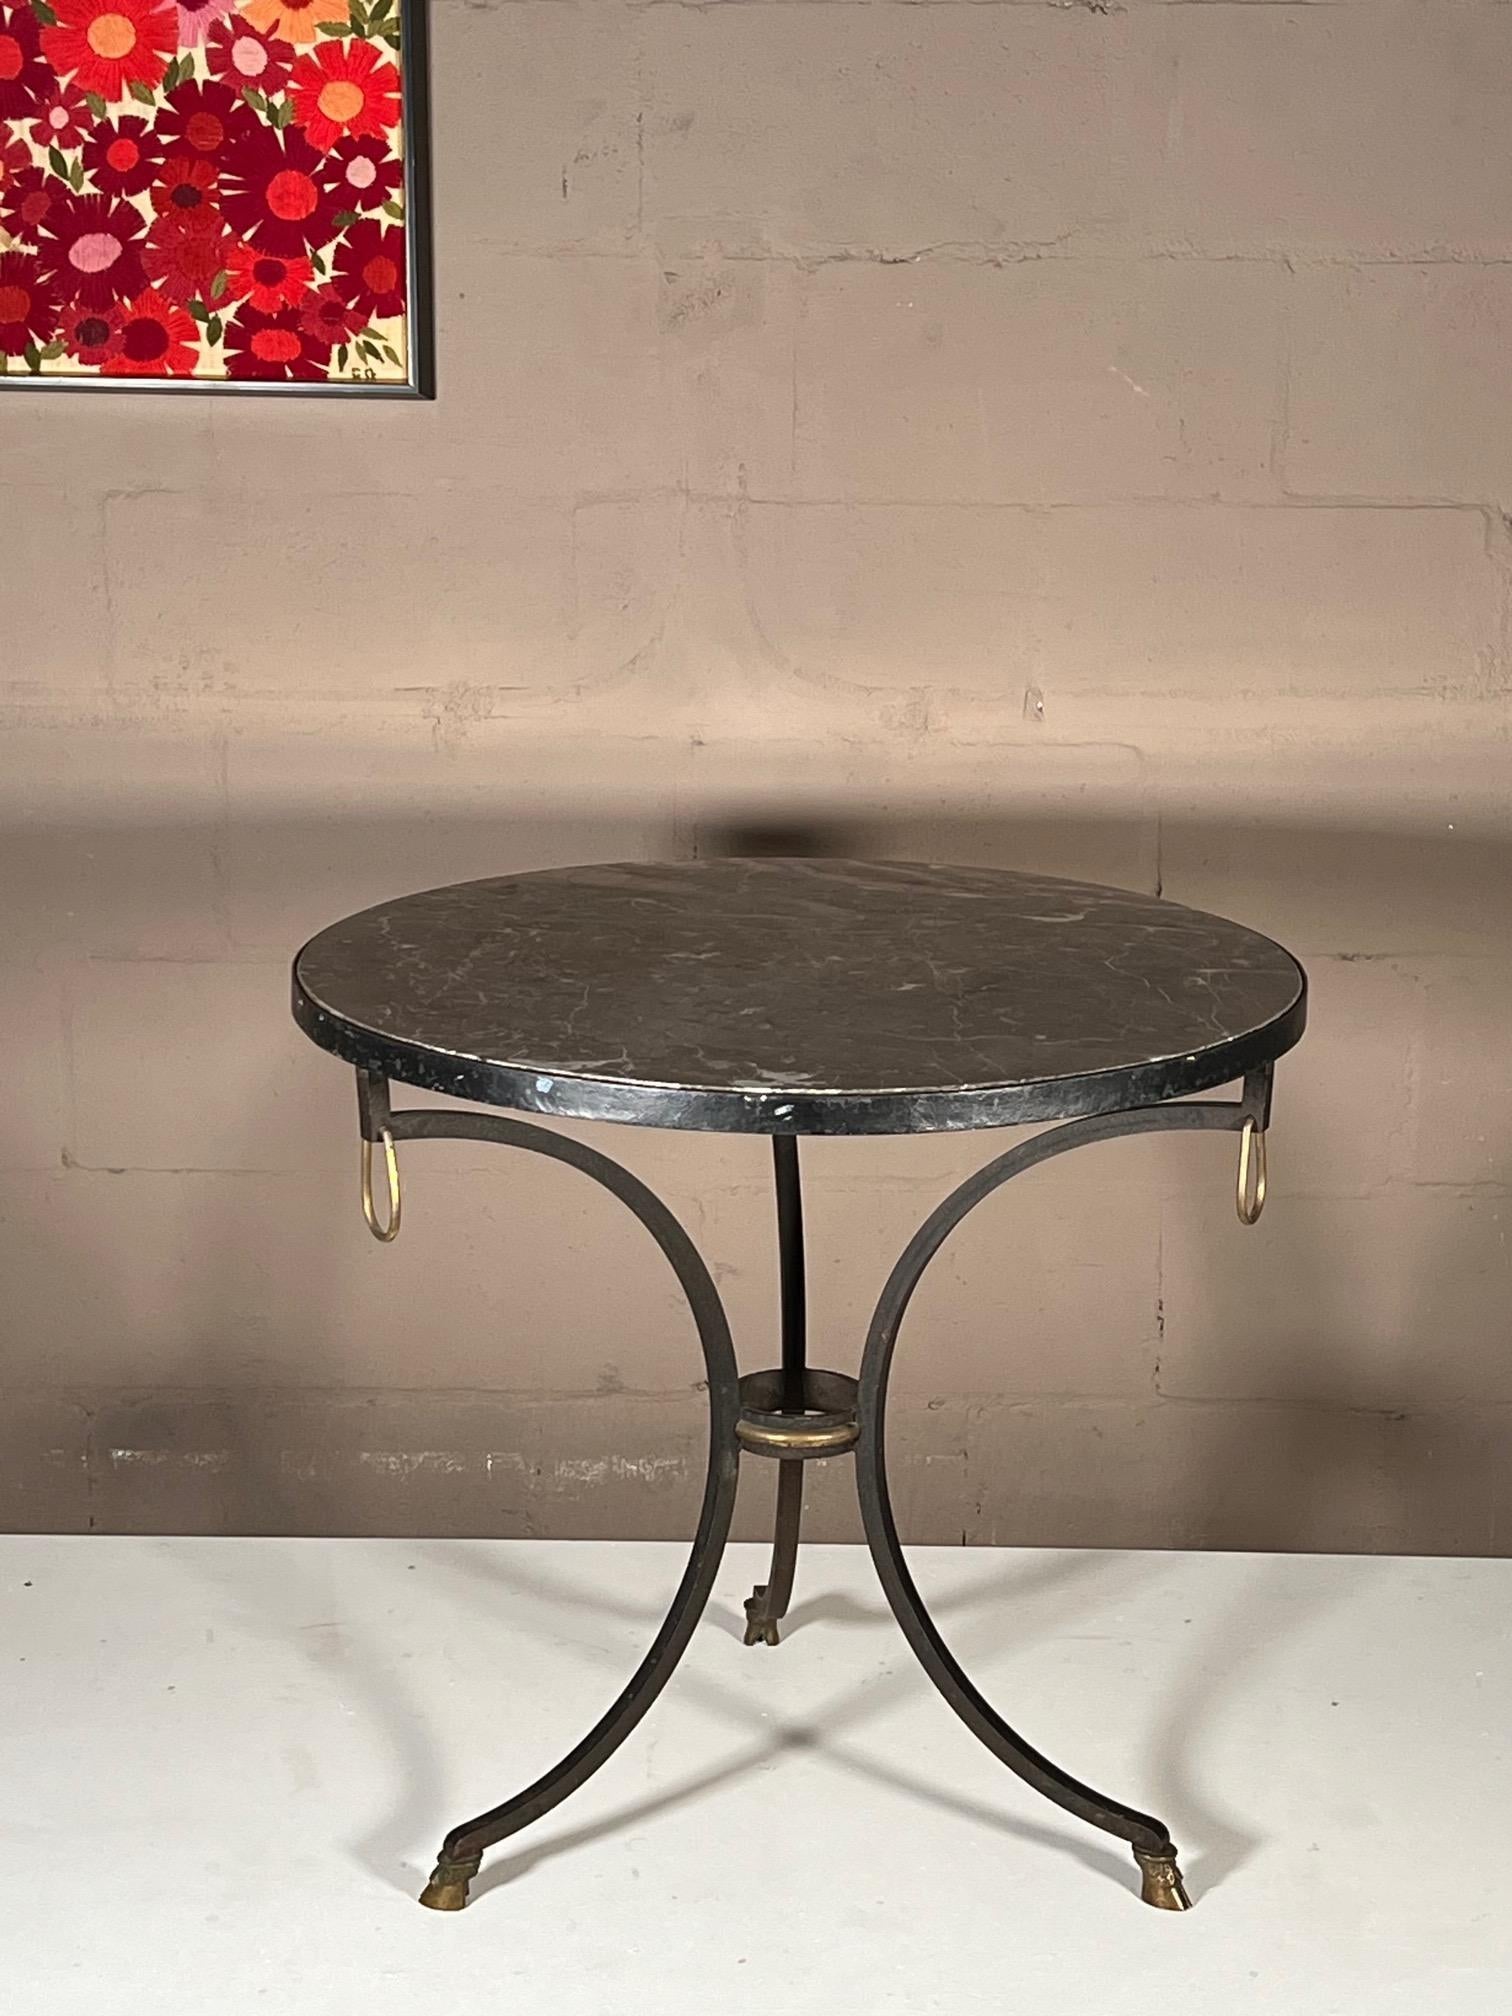 Seltener und ungewöhnlicher Gueridon-Tisch (dreibeinig) aus Schmiedeeisen mit einer schönen grauen Steinplatte. Entworfen von Yale R. Burge, der der erste Präsident der National Society of Interior Decorators war. Herr Burge war Partner in der